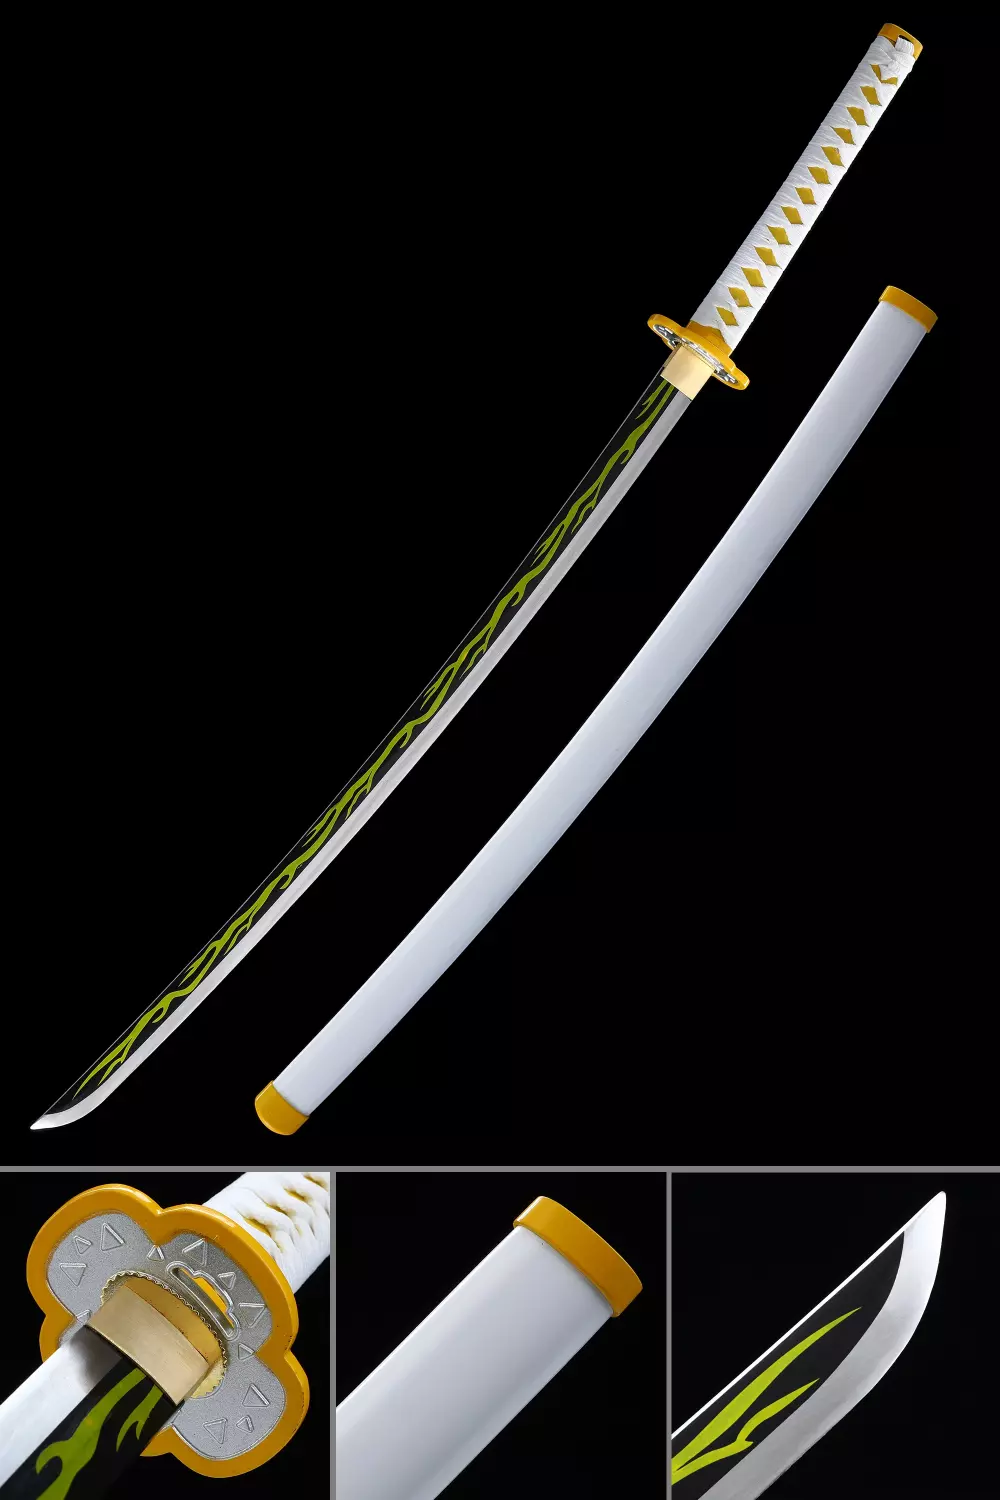 Zenitsu Sword  Zenitsu Agatsuma's Sword, Demon Slayer Sword, Kimetsu No  Yaiba Sword - Nichirin Sword - TrueKatana